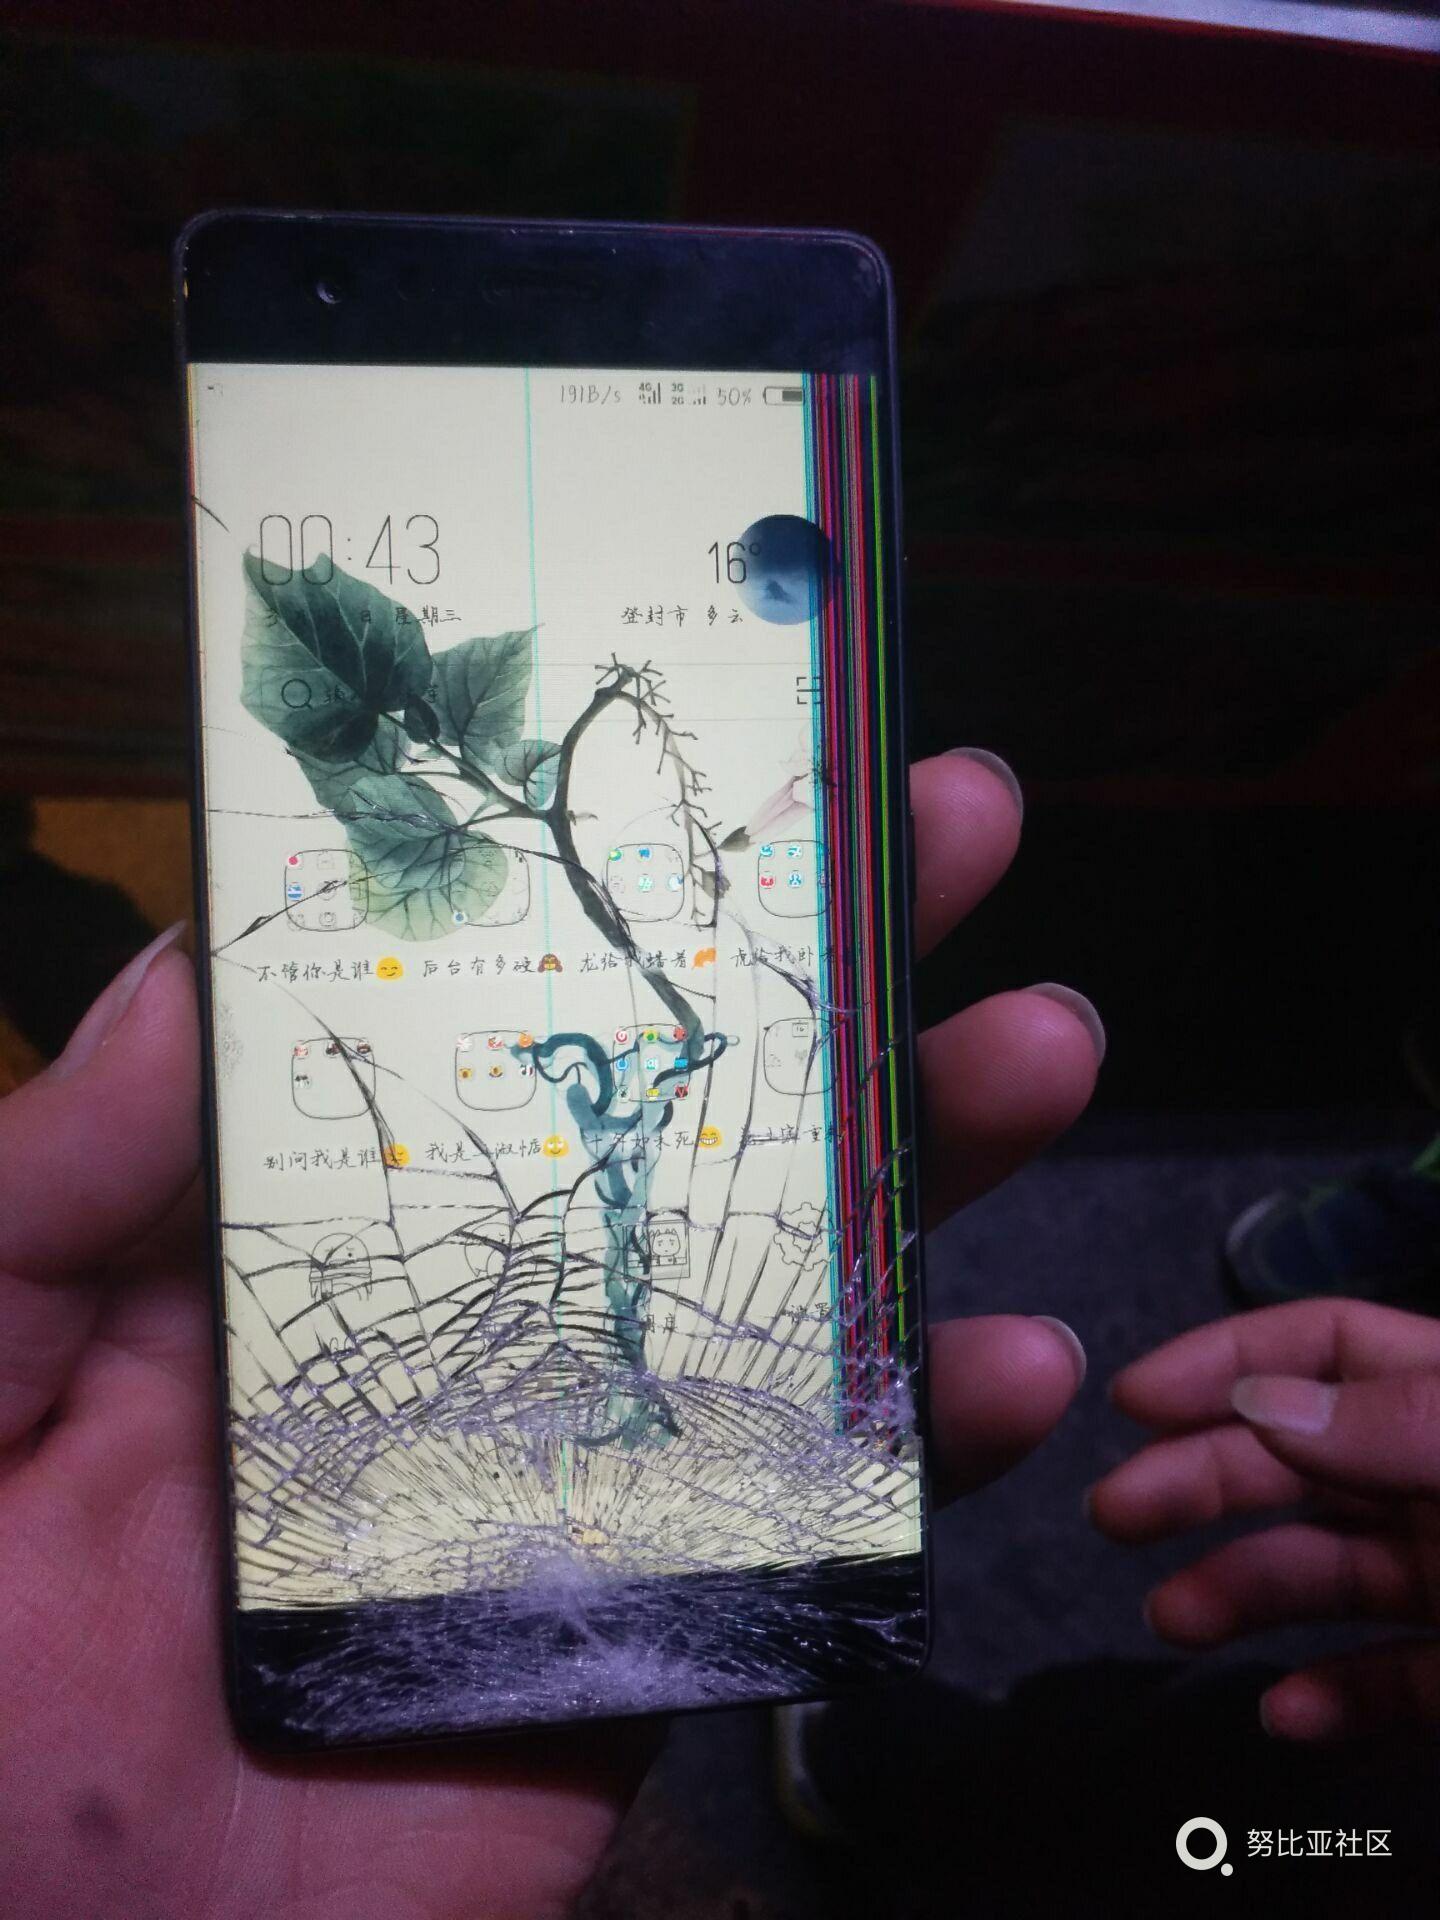 刚买的新手机 屏幕碎了 心疼